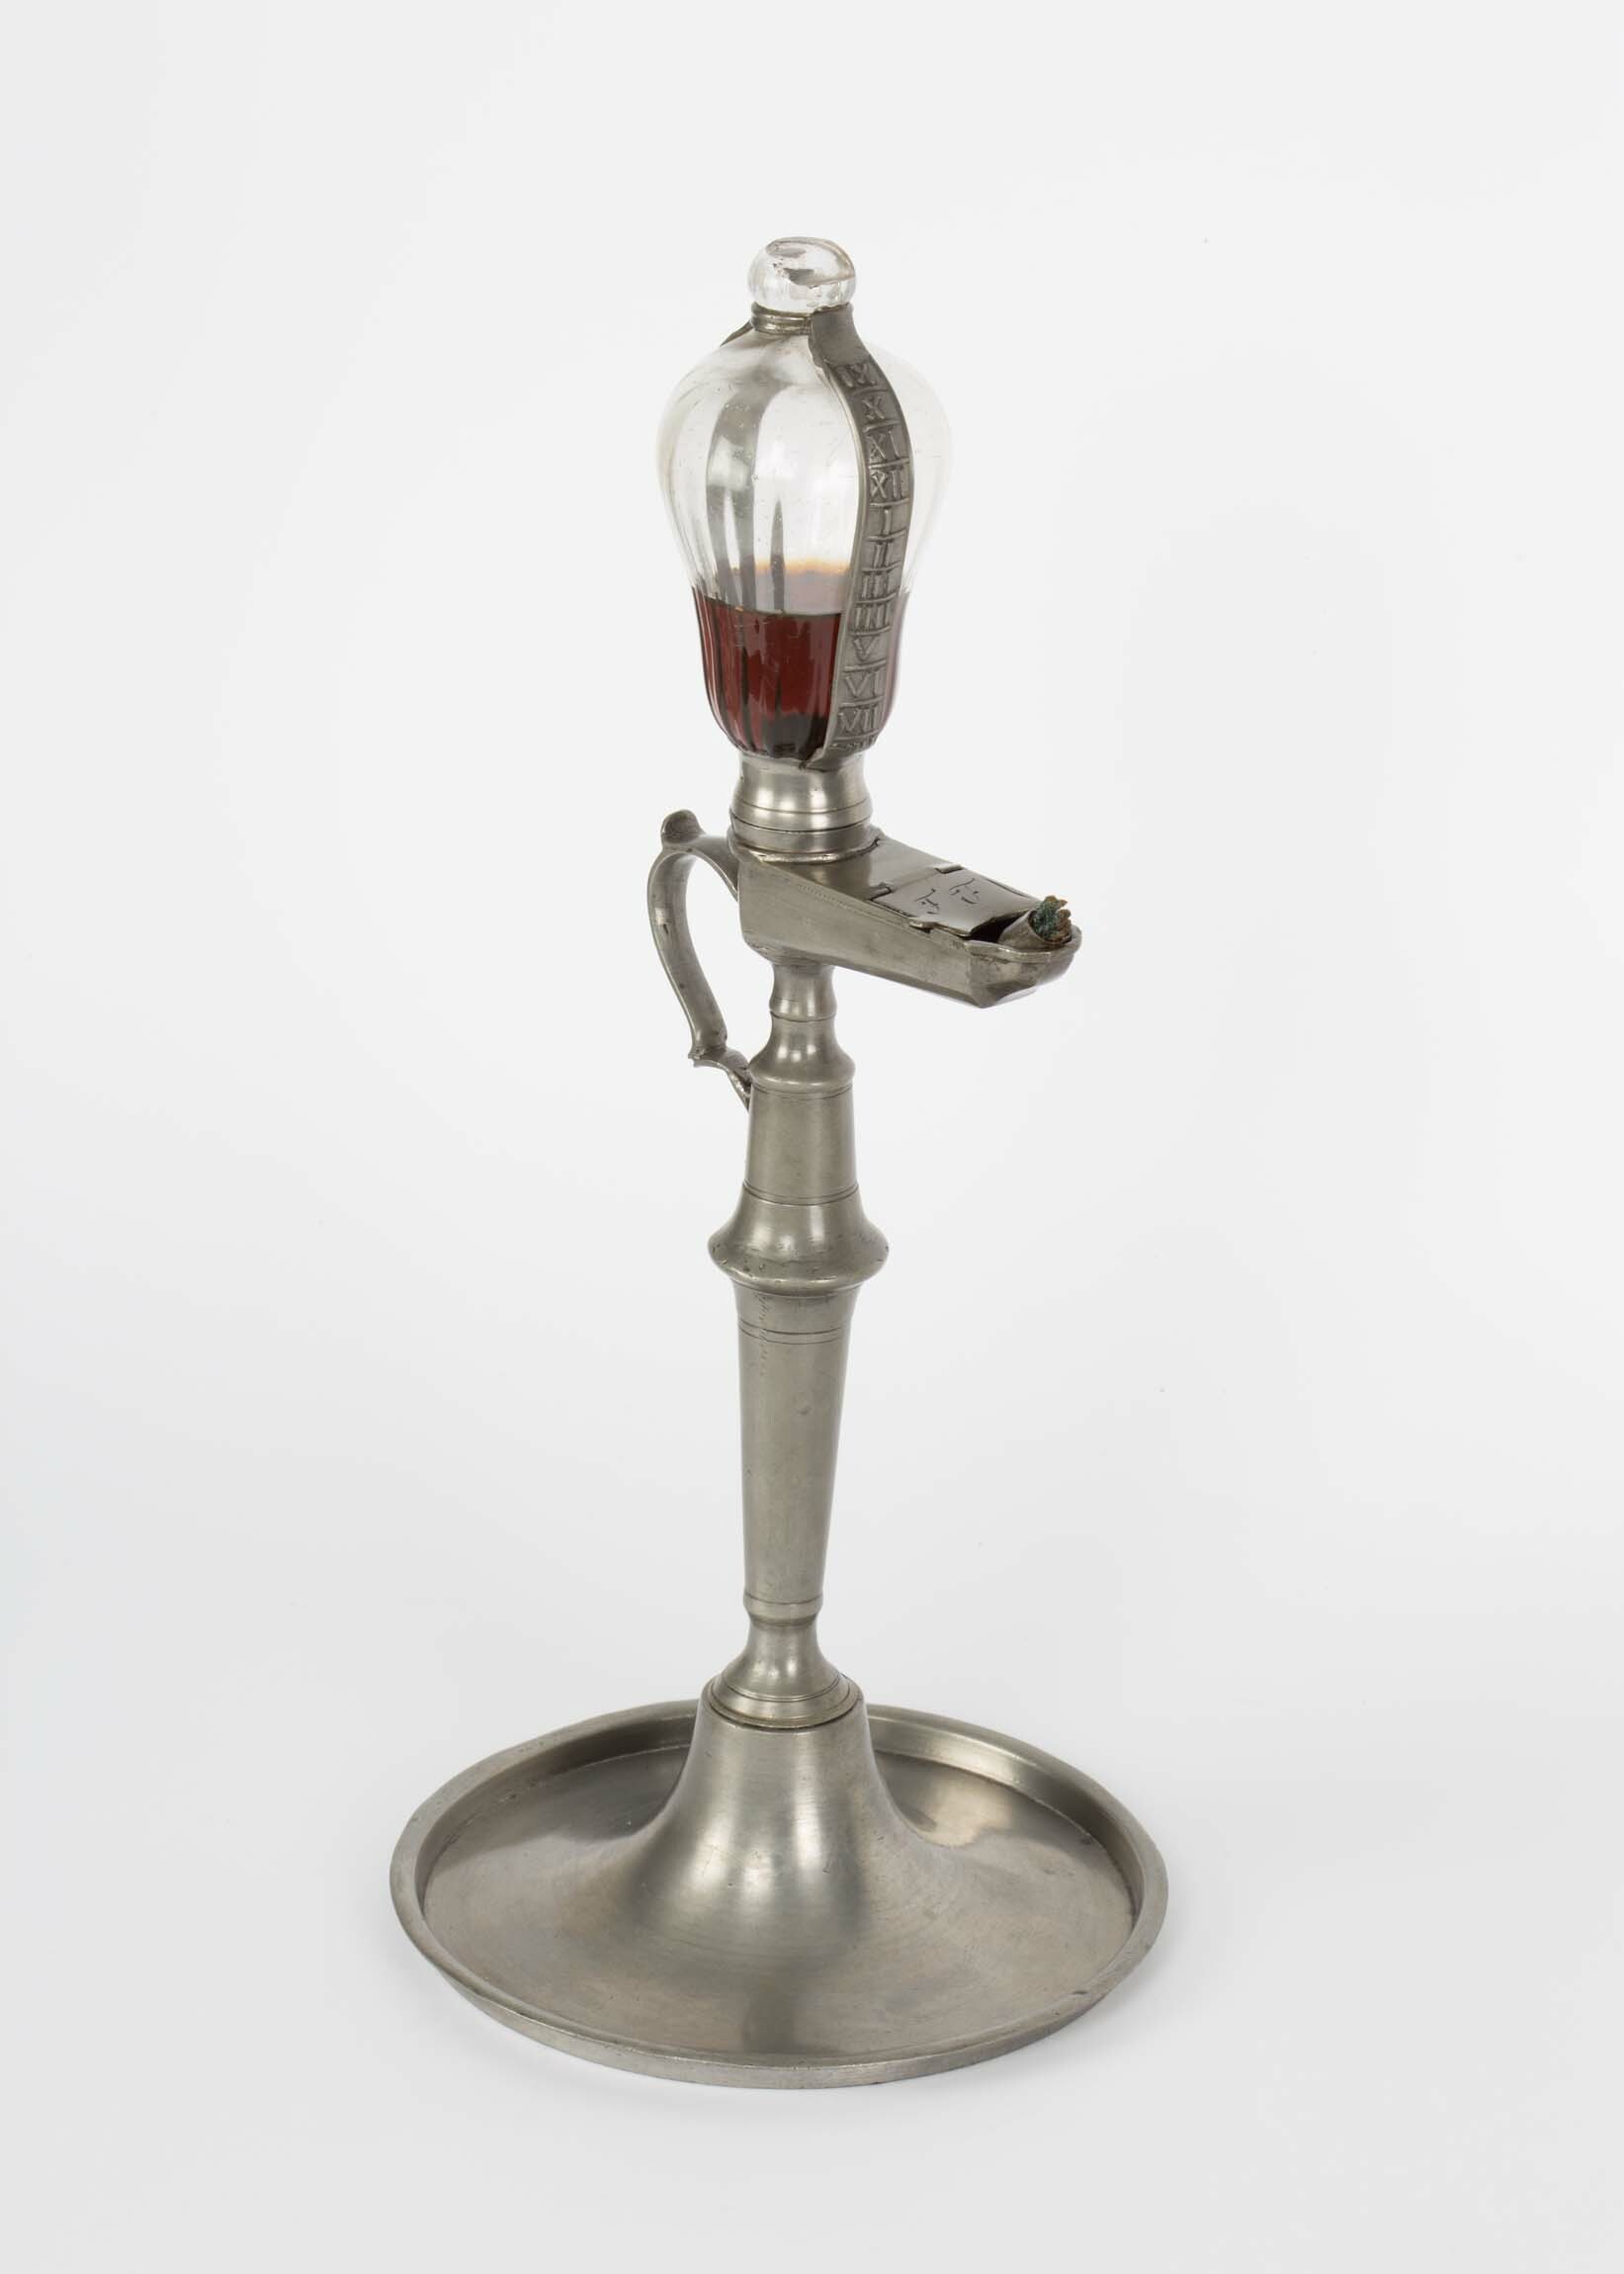 Öllampenuhr, 19. Jahrhundert (Deutsches Uhrenmuseum CC BY-SA)